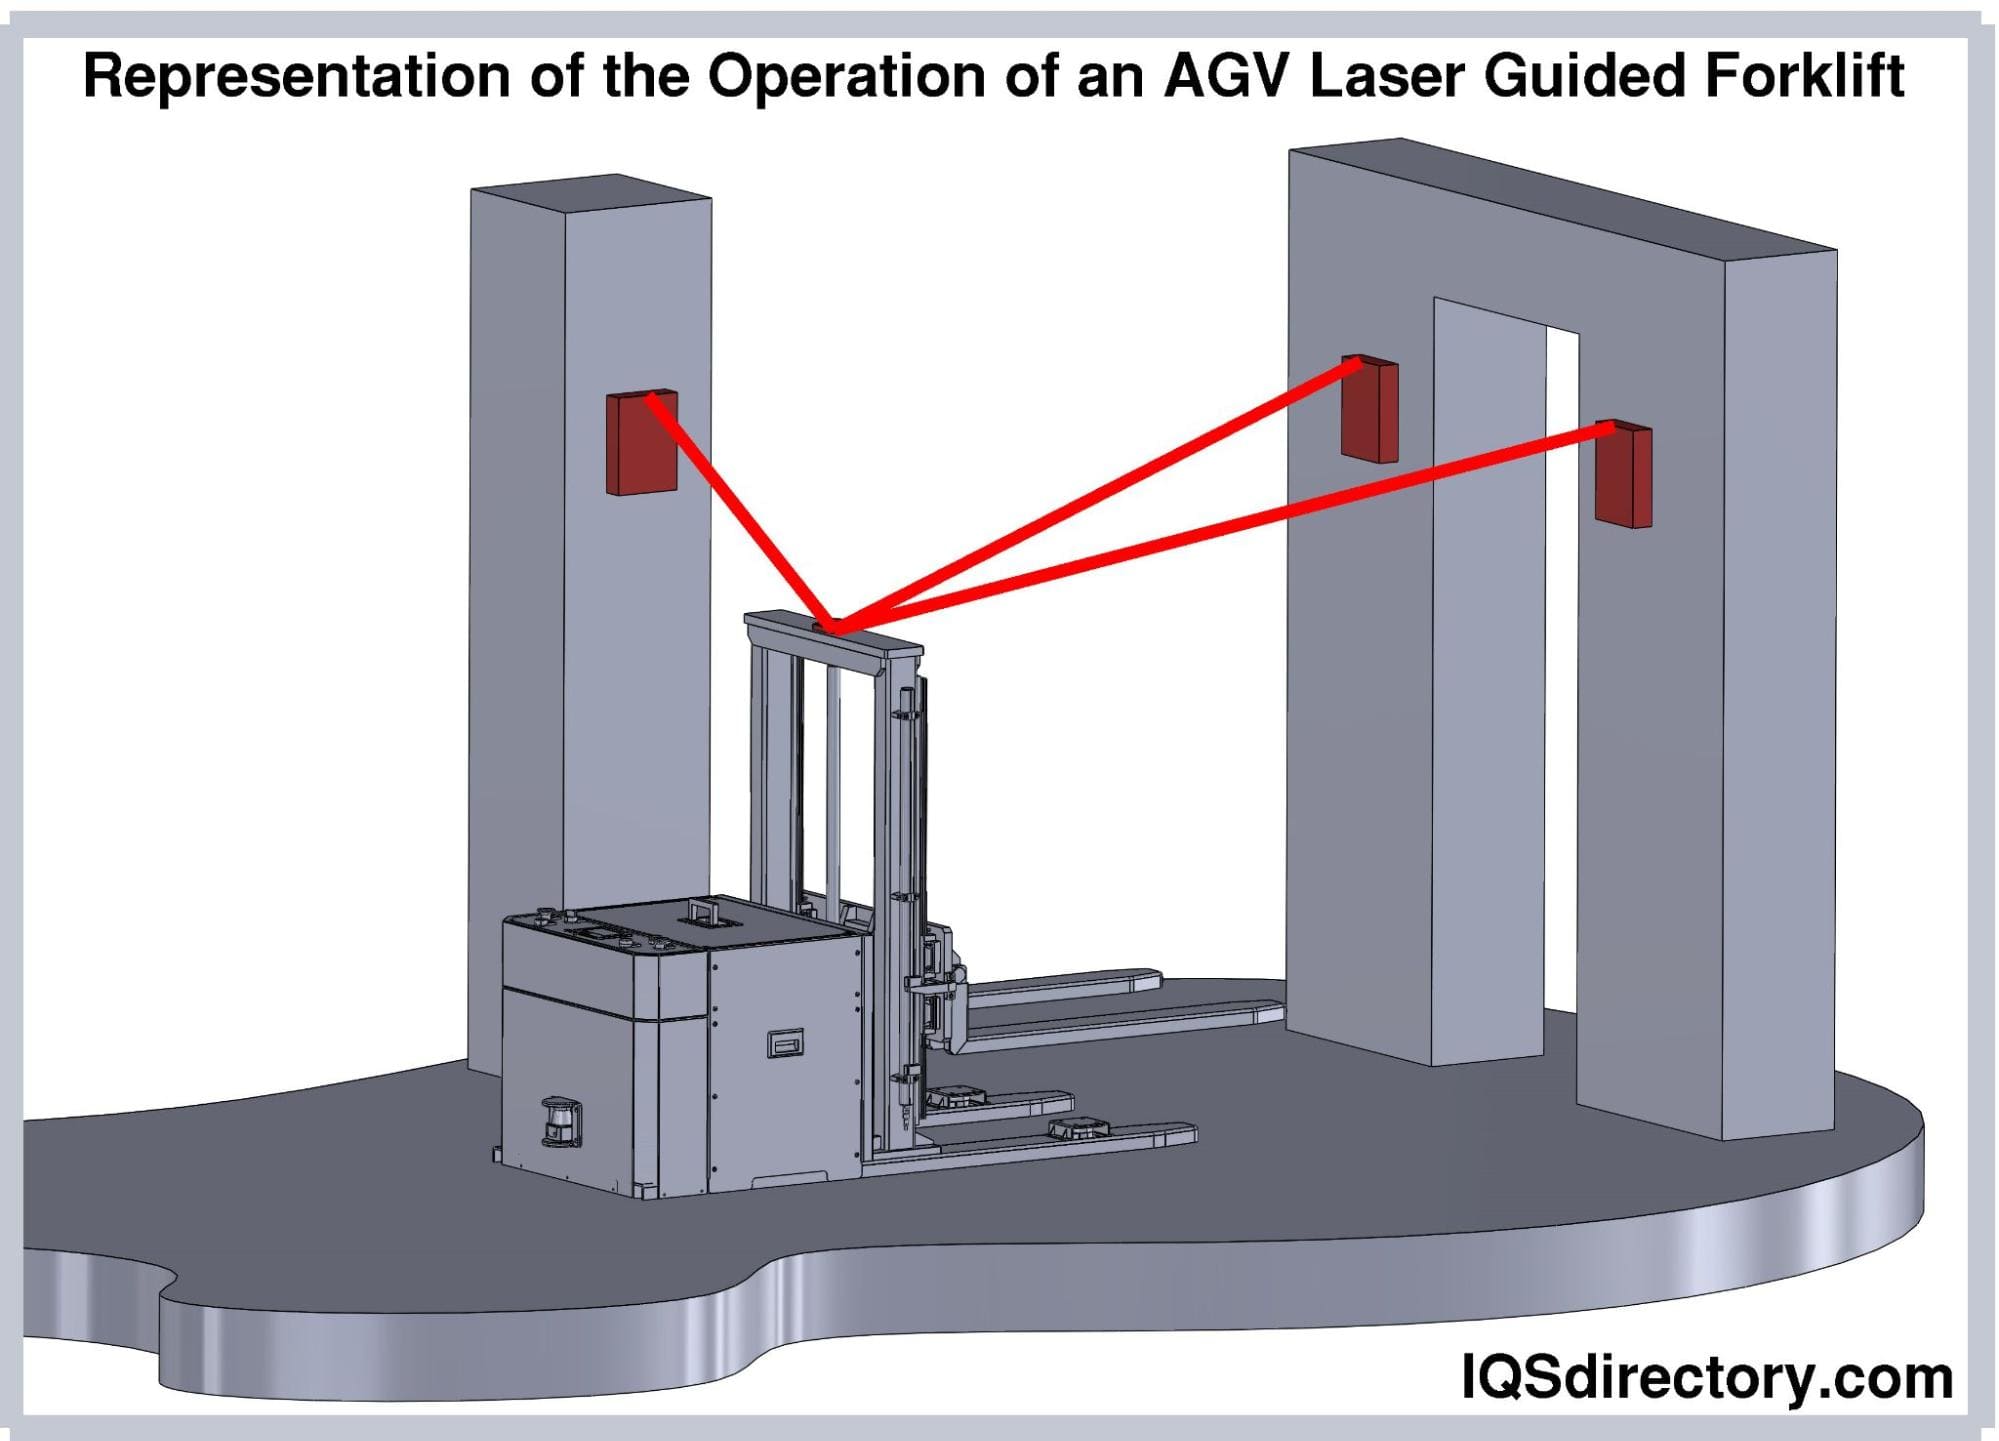 AGV laser Guided Forklift